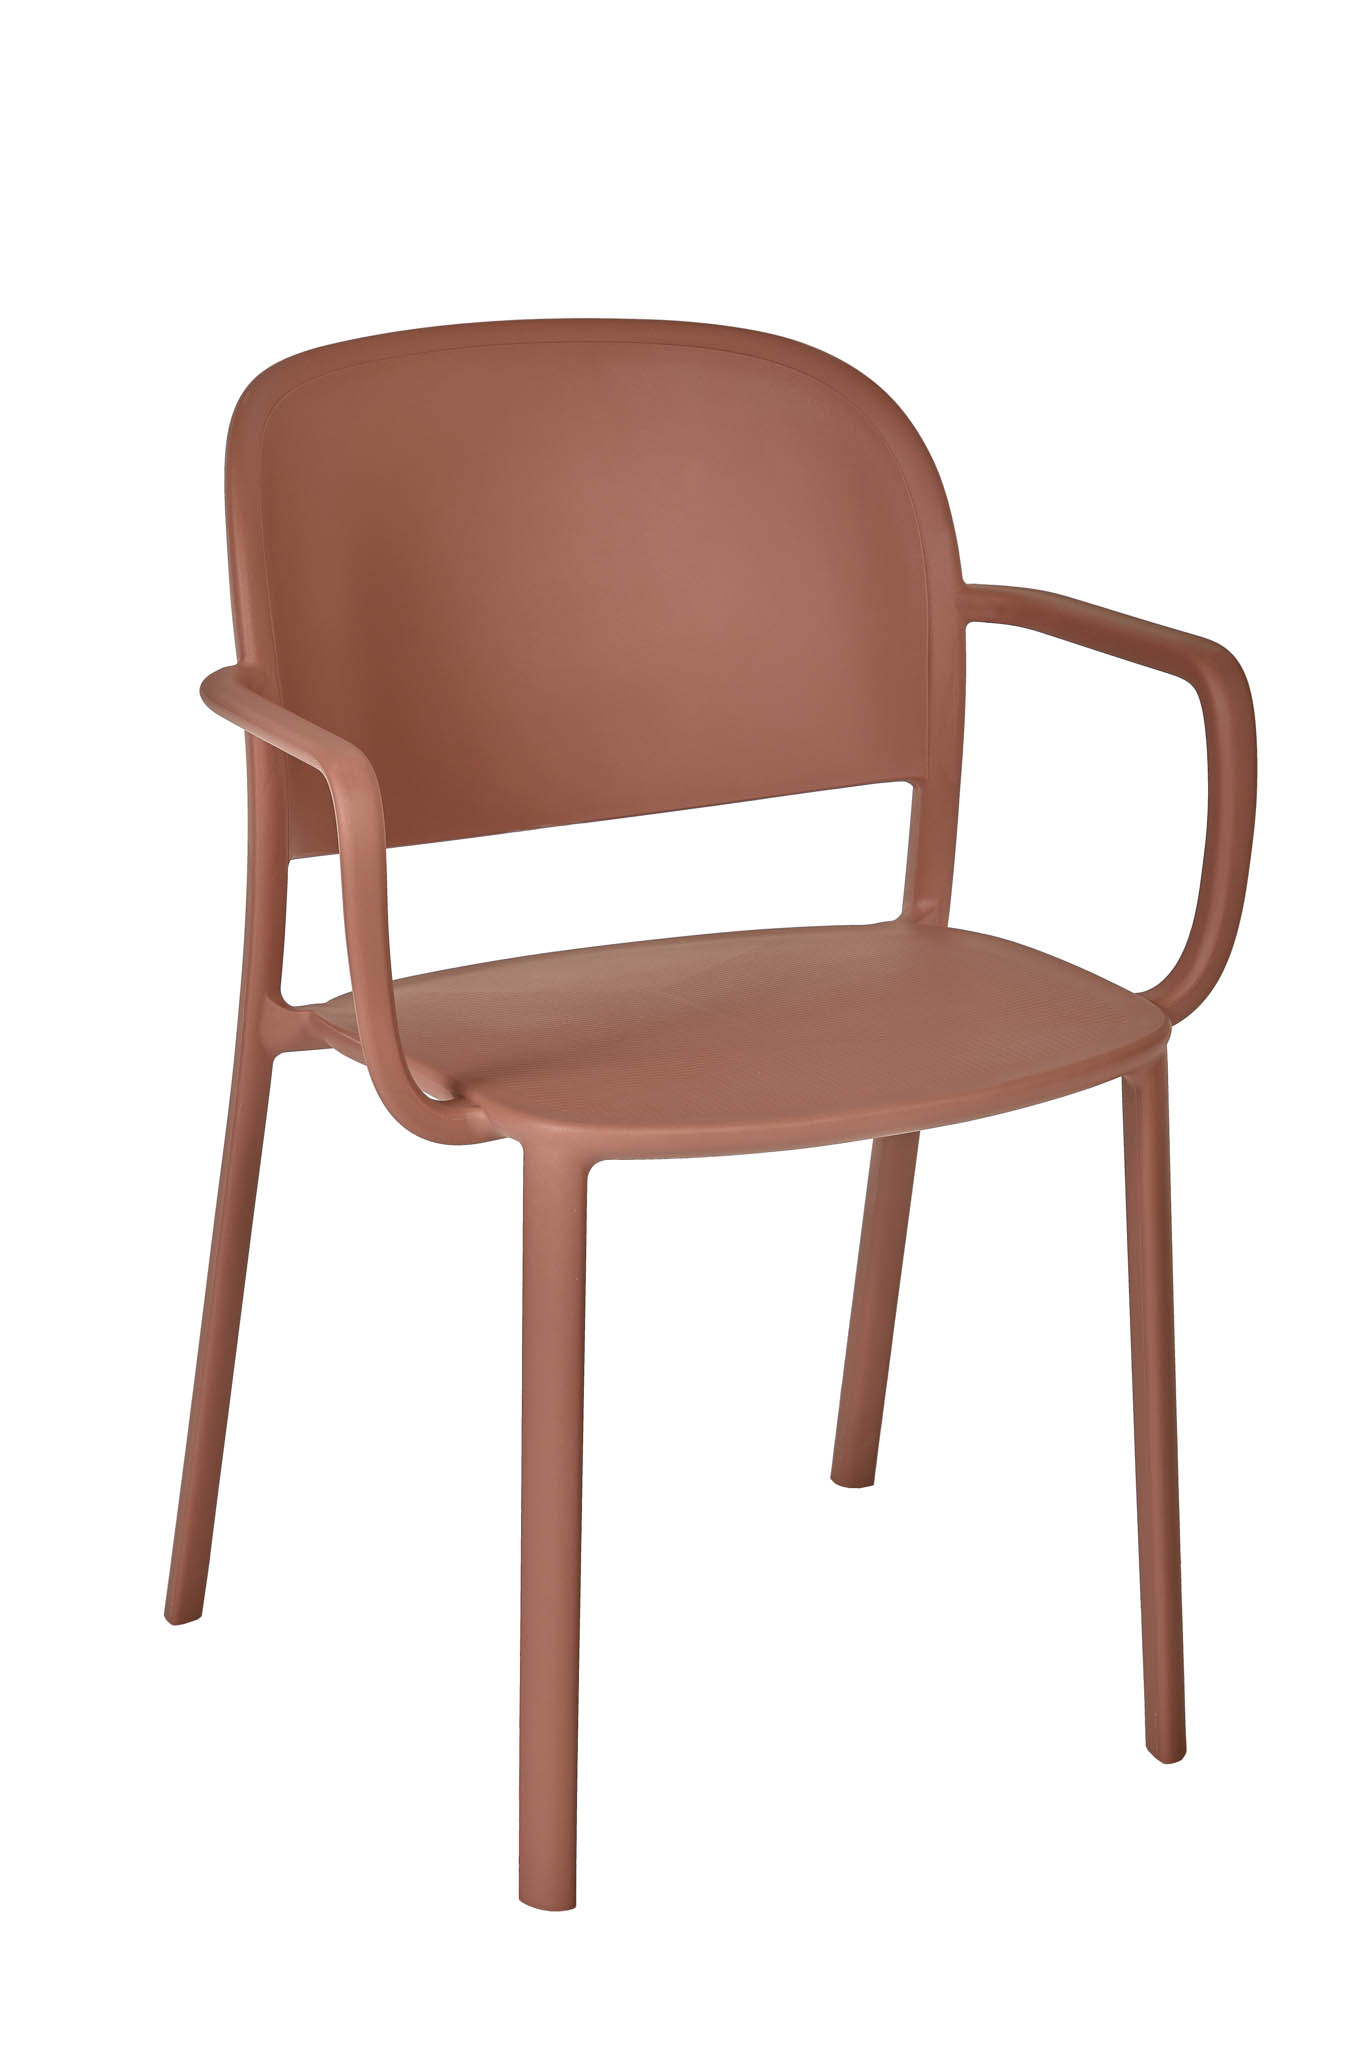 AD hotelska oprema Fotelja 01 - Terracota boje slika proizvoda